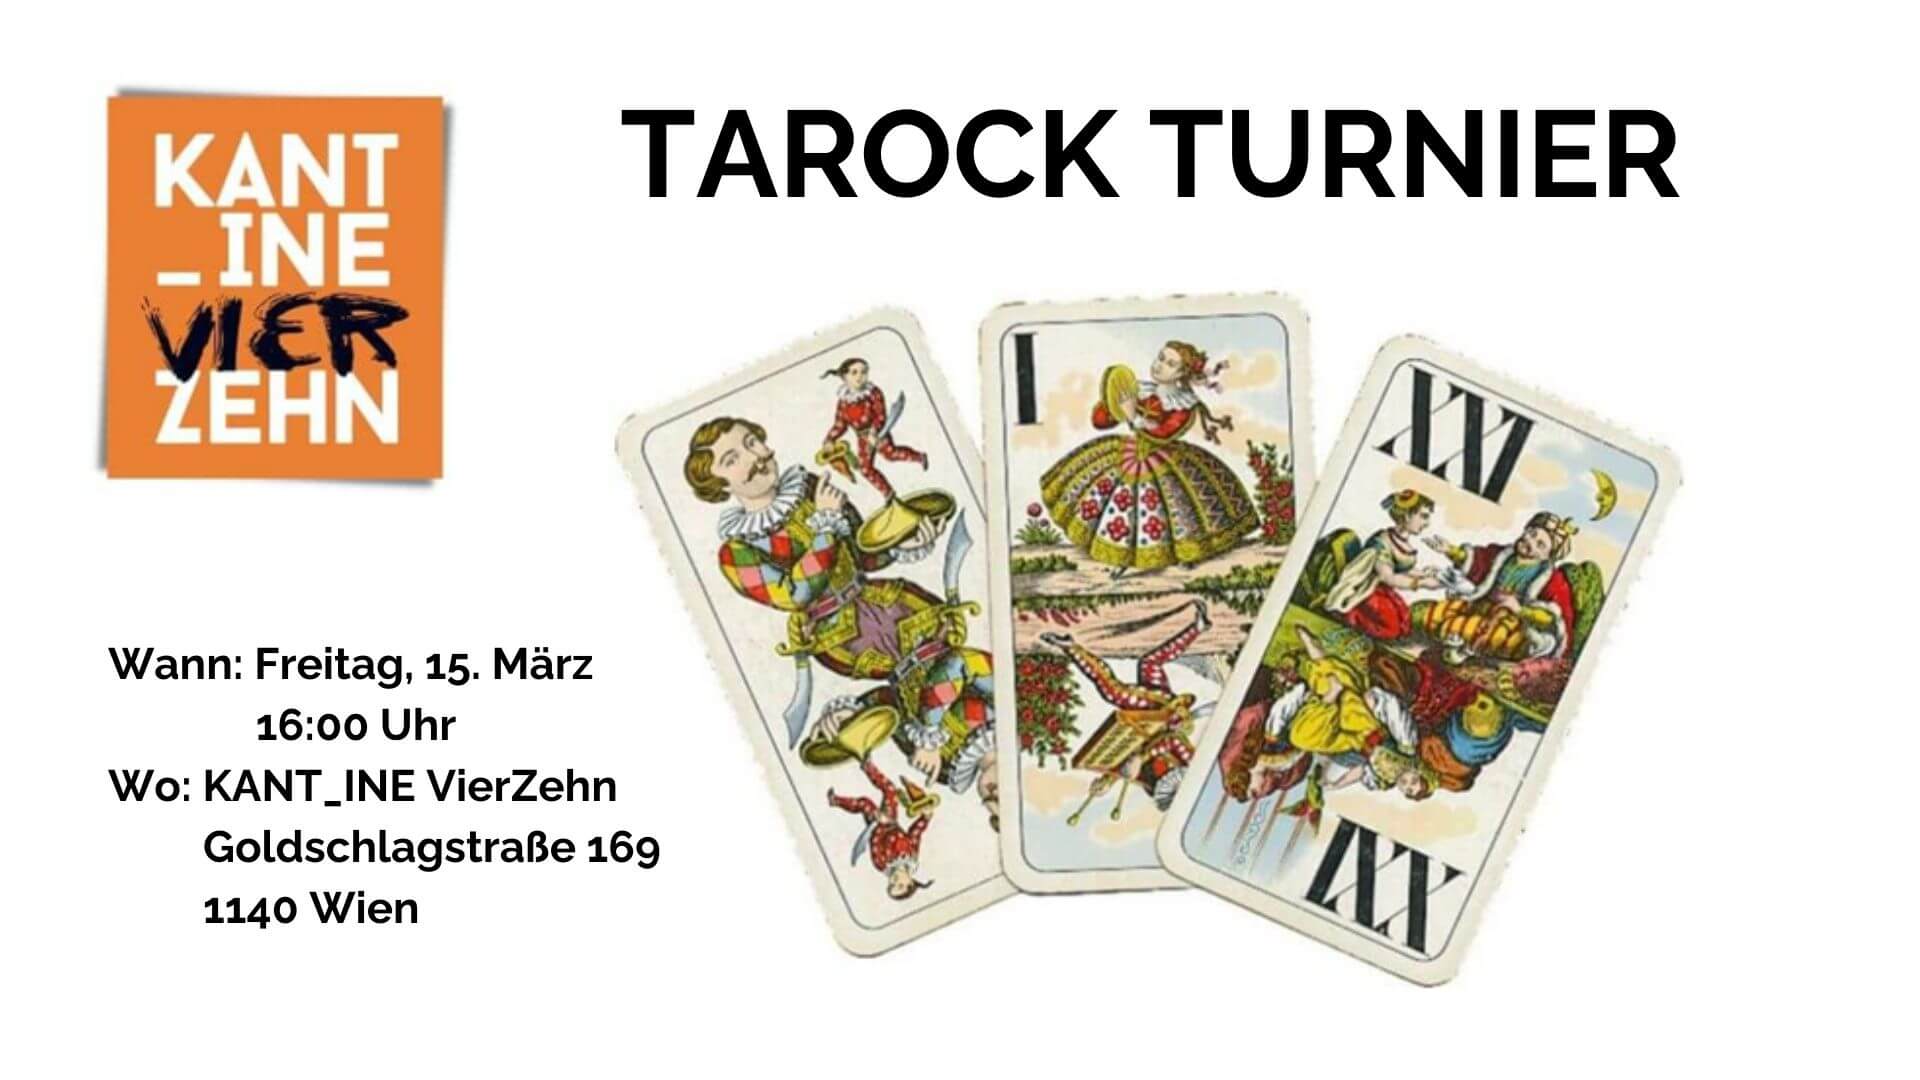 Tarock-Turnier Einladung